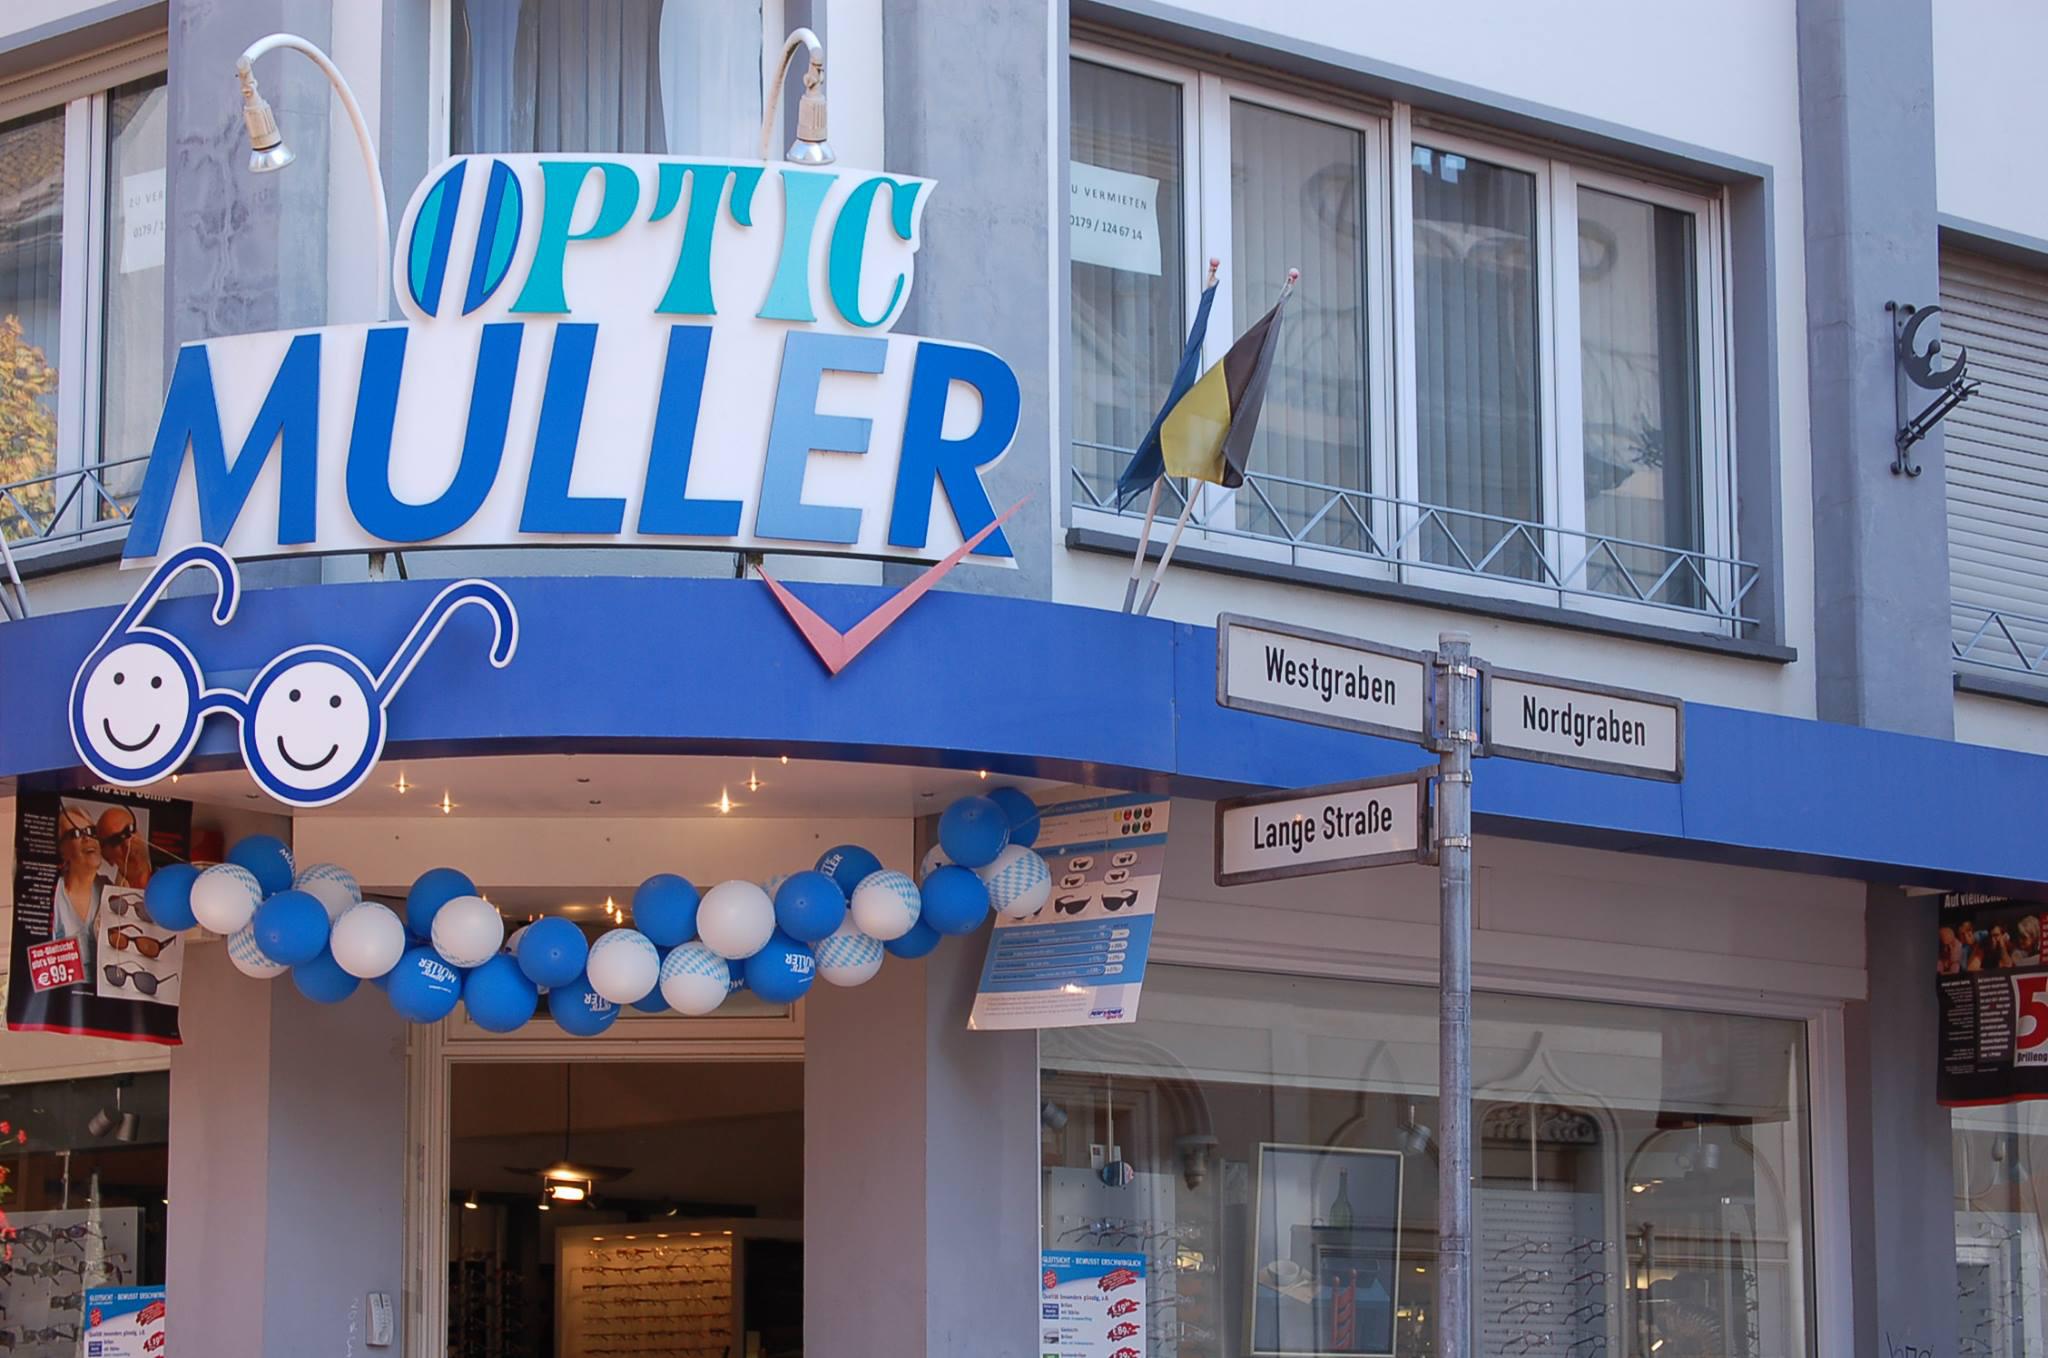 Optic Müller Dülken, Lange Straße 11 in Viersen